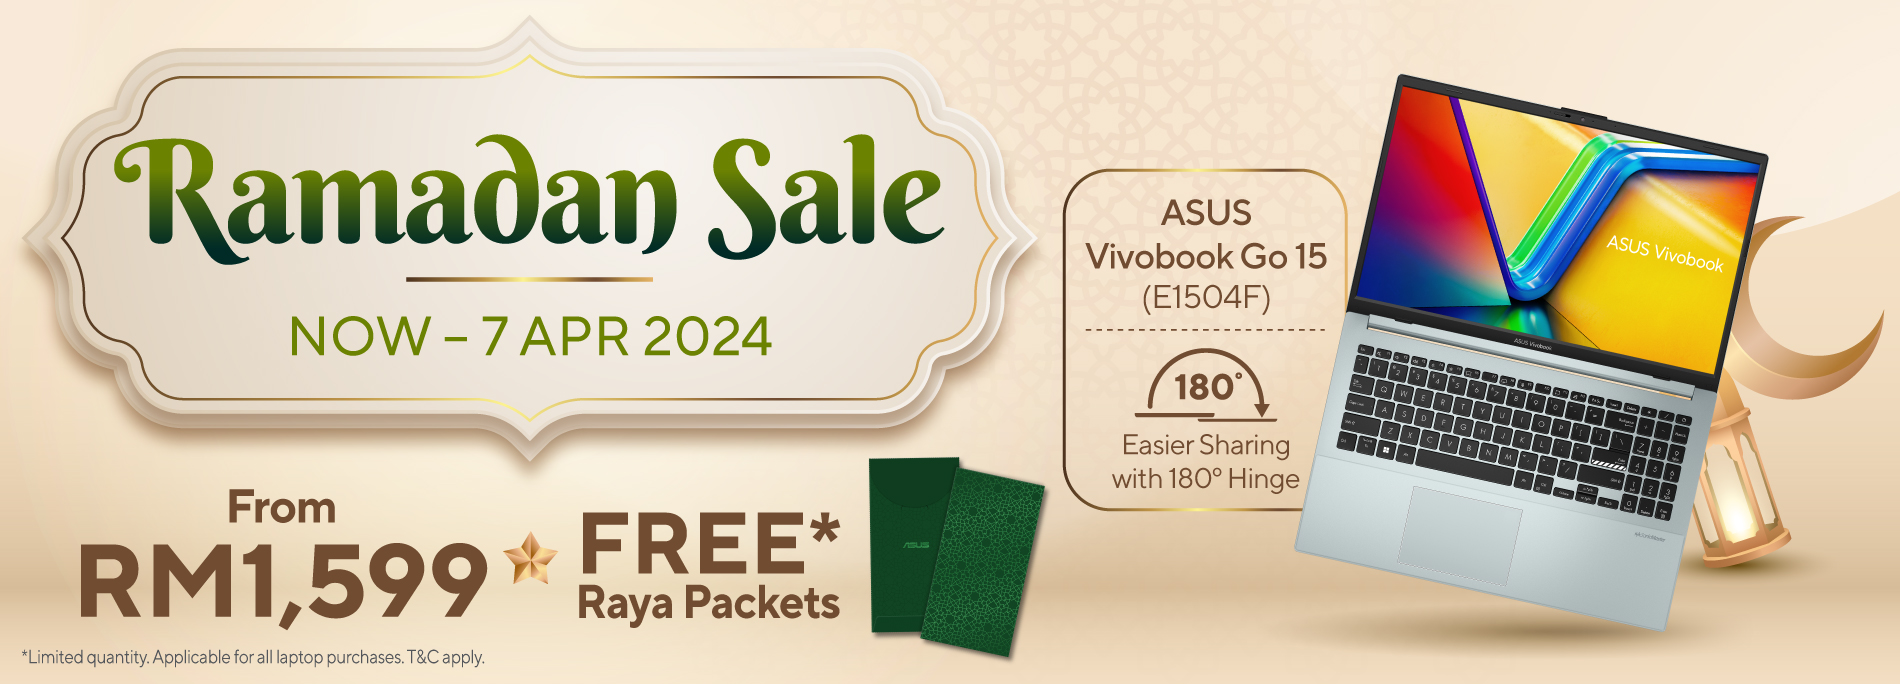 Ramadan Sale 2024